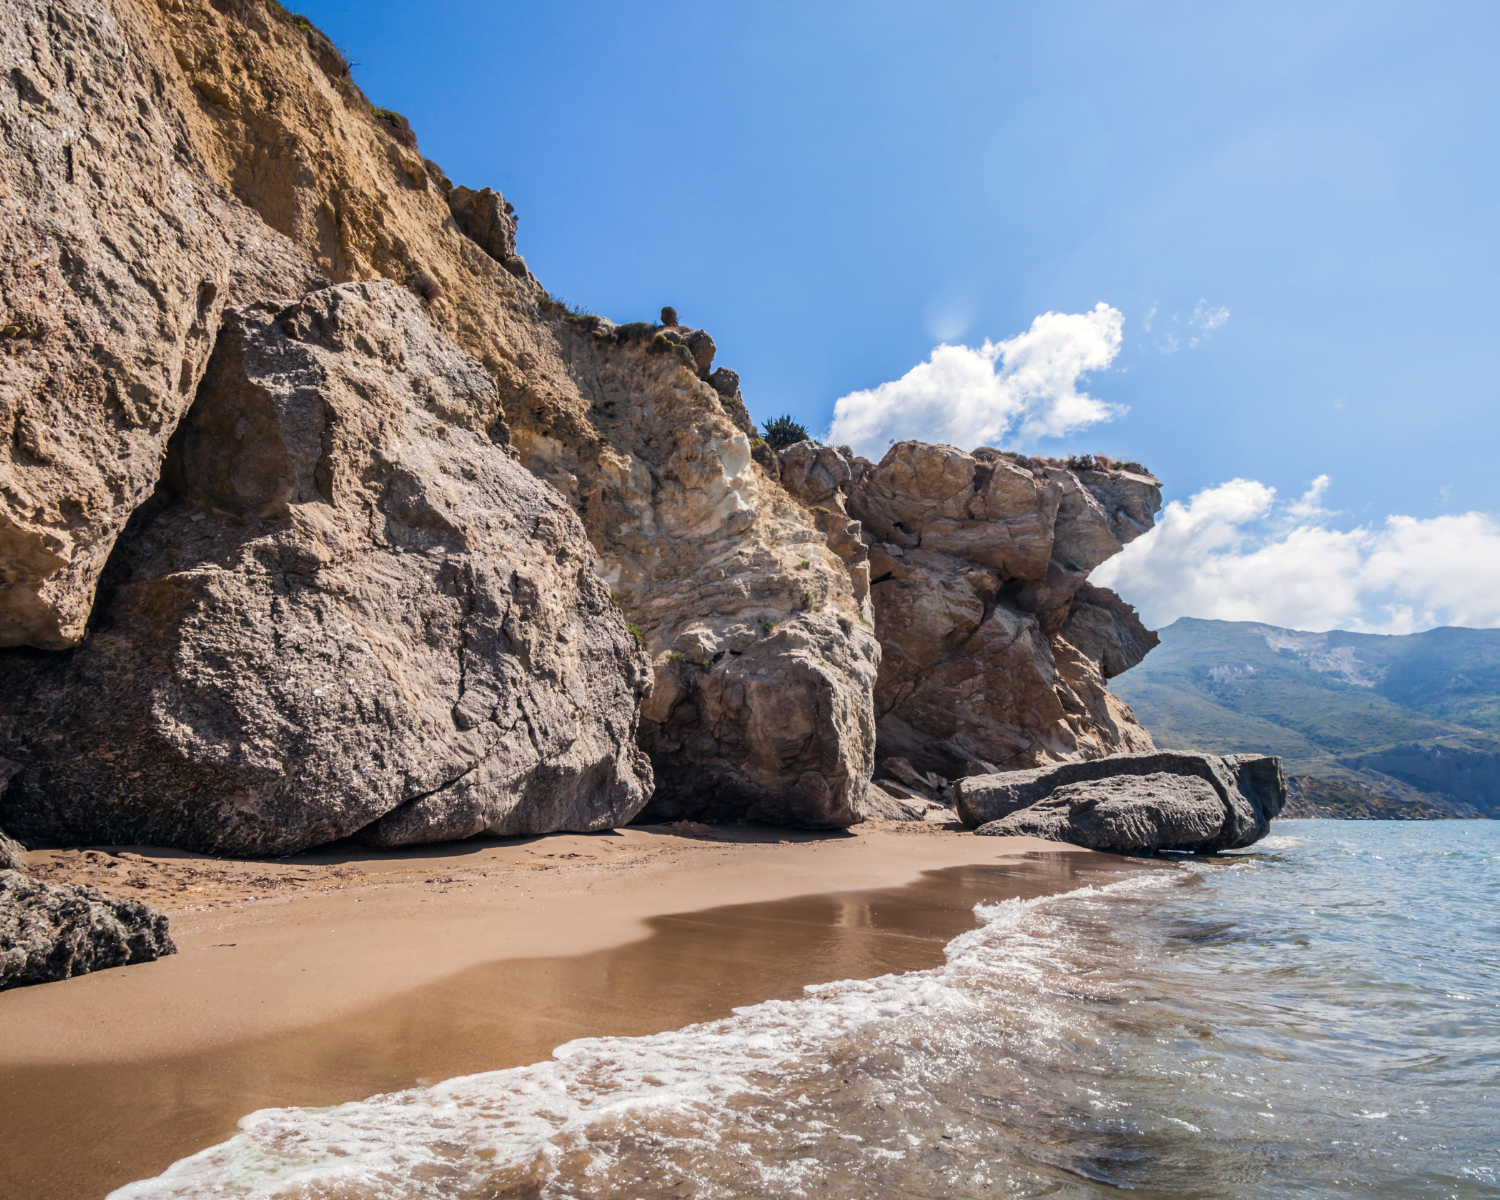 Sandy beach with monumental rocks Kalamaki, Zakynthos Greece